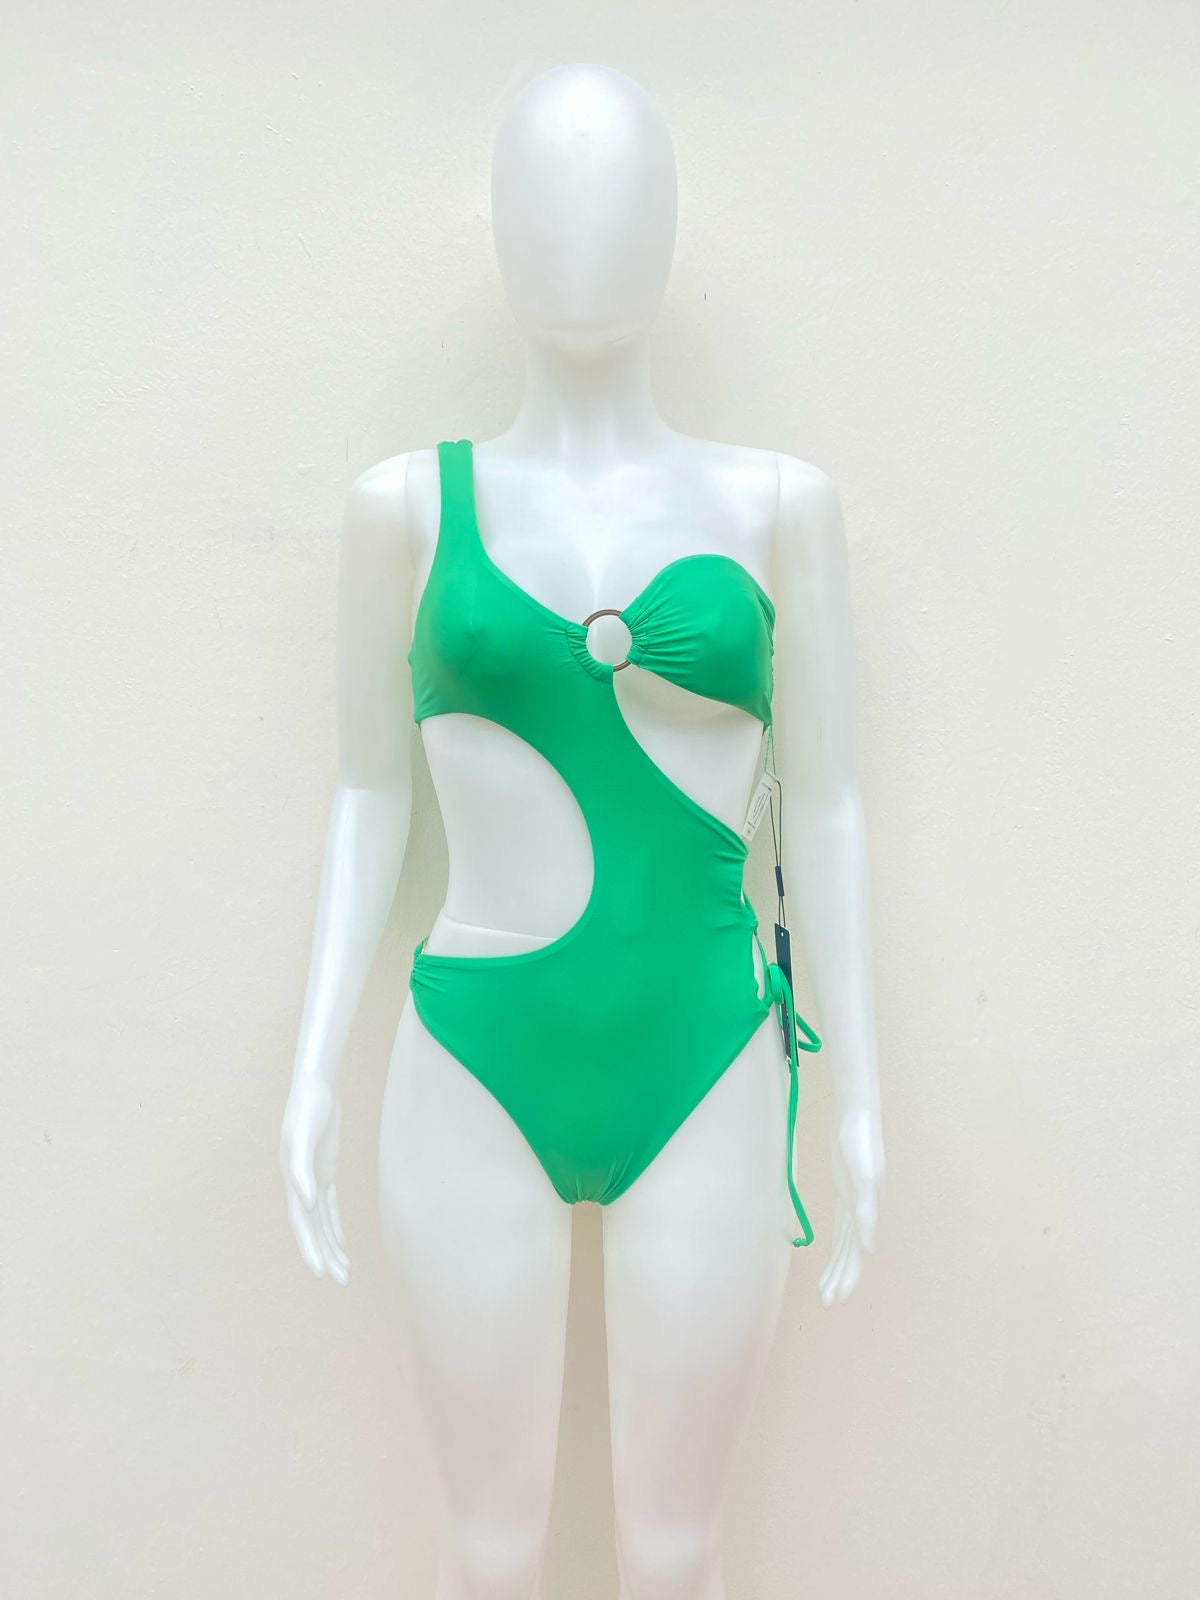 Biquini Fashion Nova Original, Verde con con lazo ajustable en los lados y placa dorada en el centro.